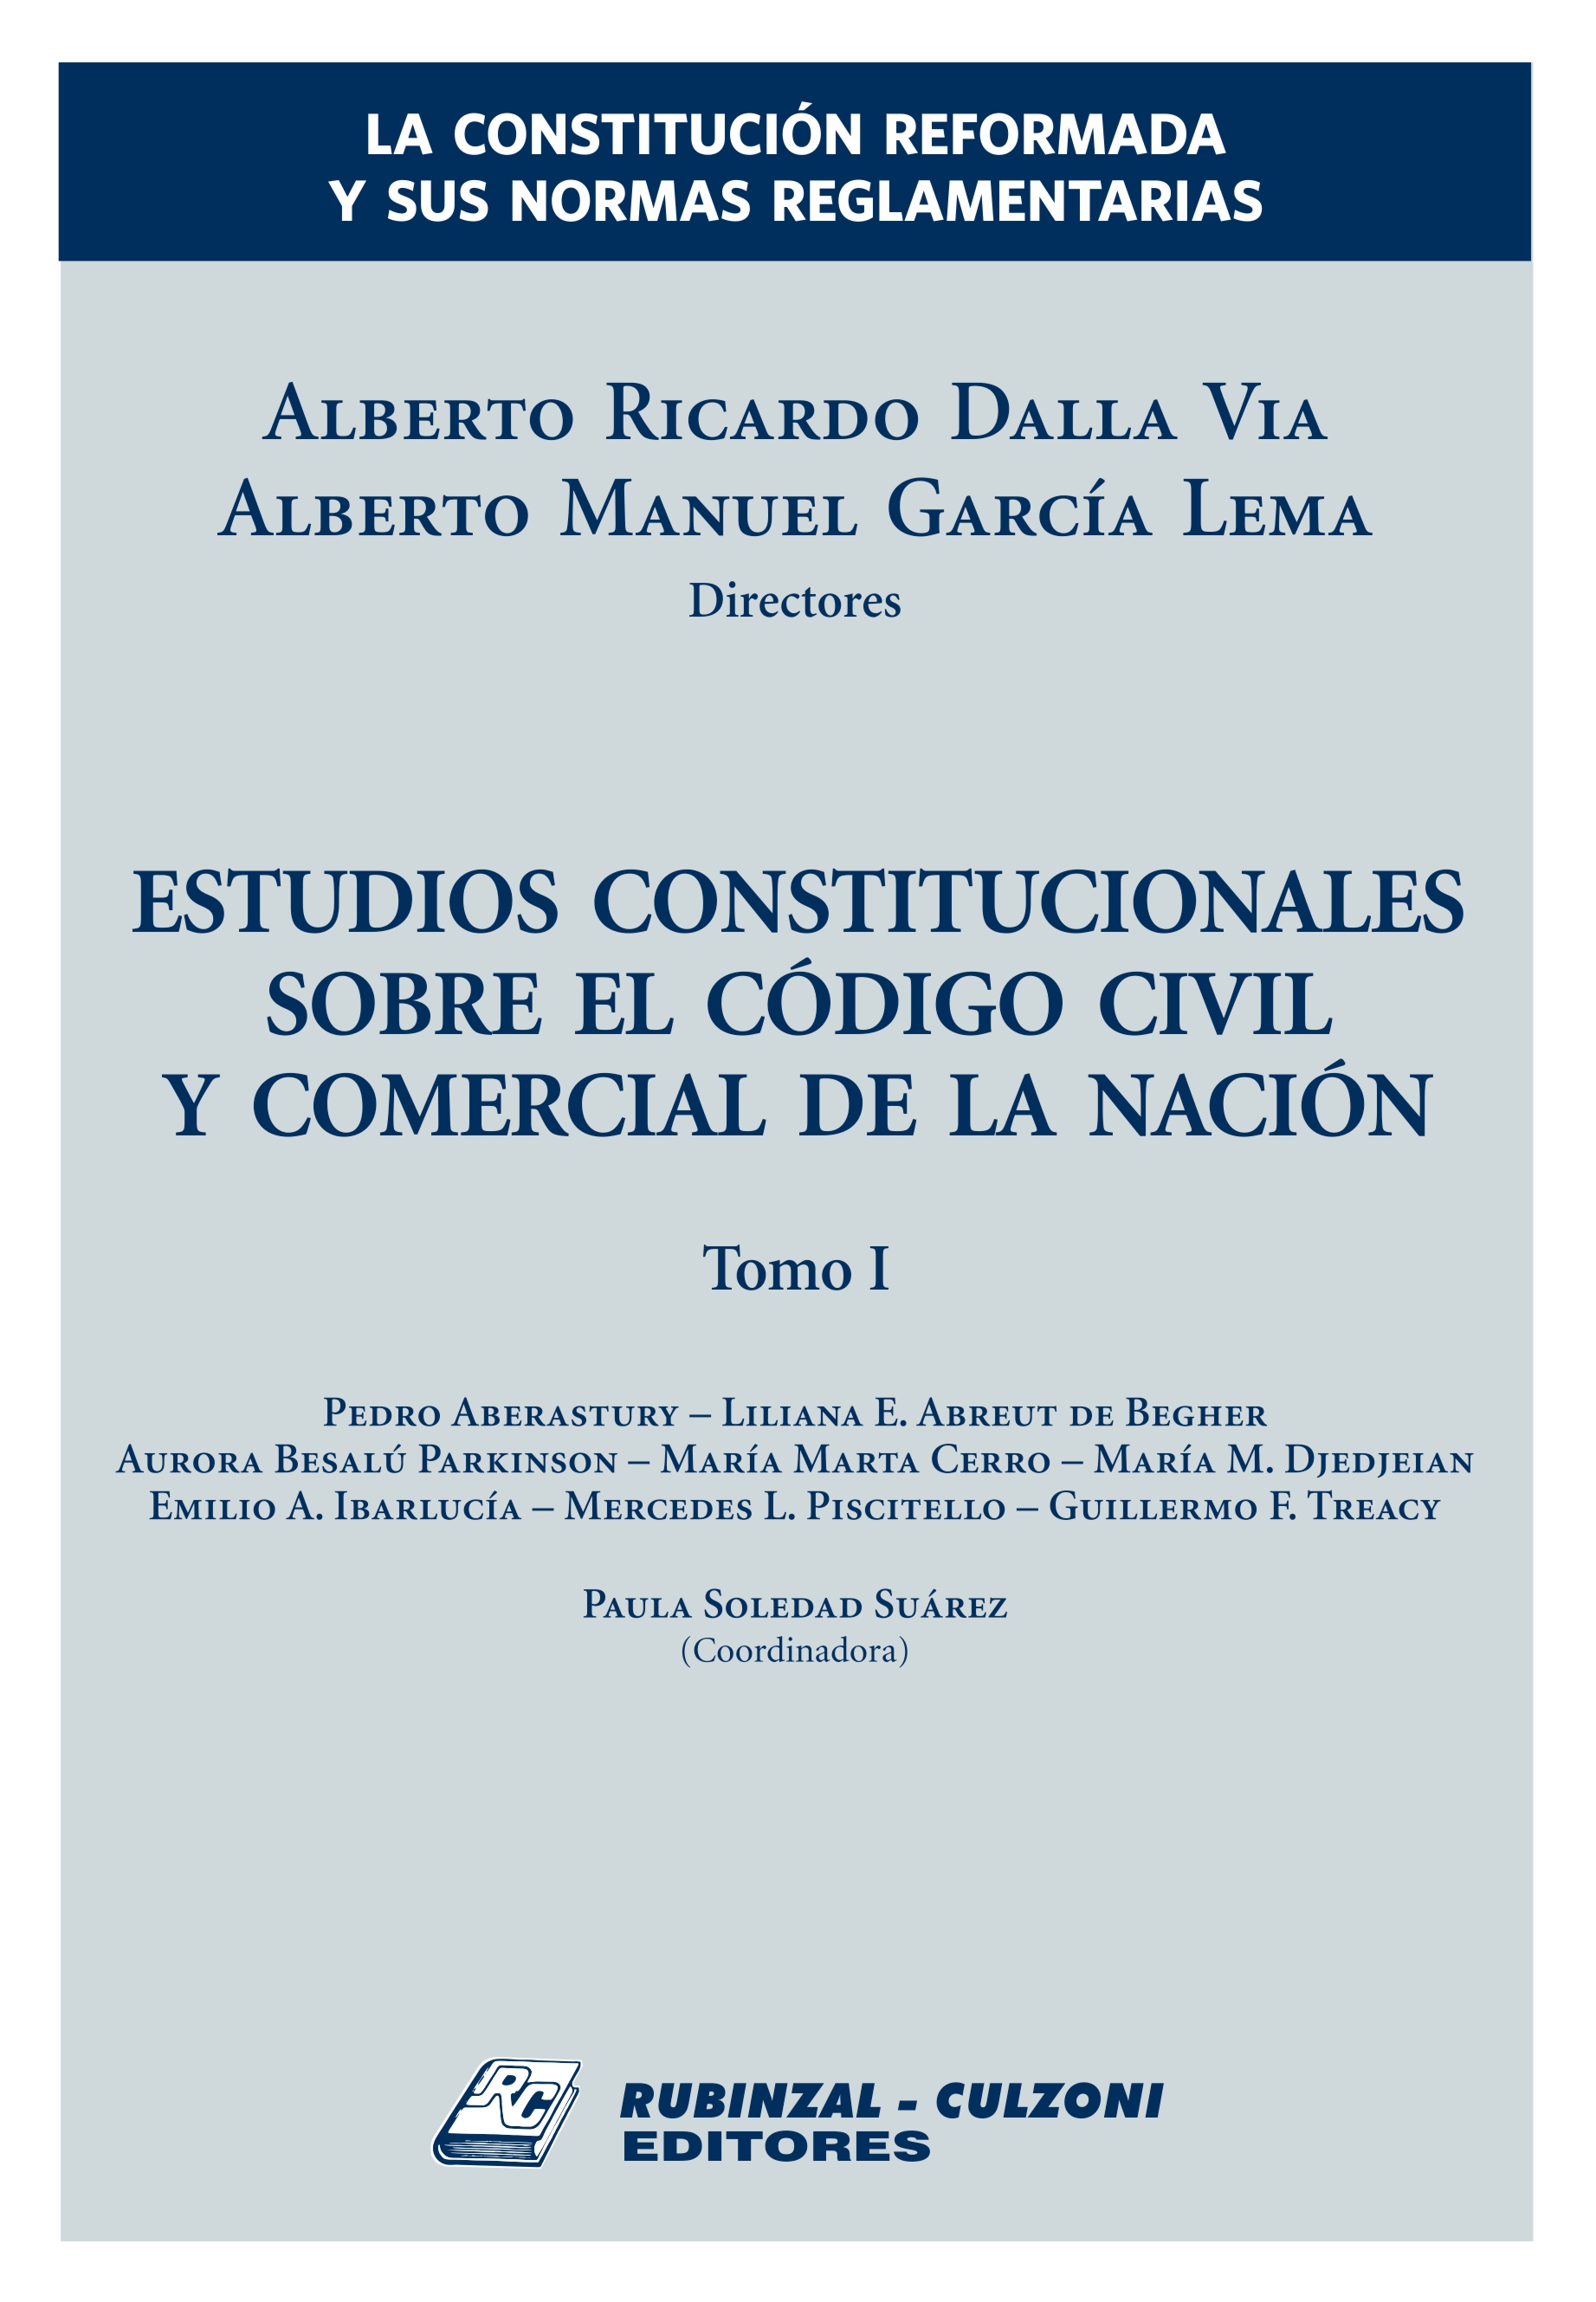 La Constitución reformada y sus normas reglamentarias. Estudios constitucionales sobre el Código Civil y Comercial de la Nación - Tomo I.